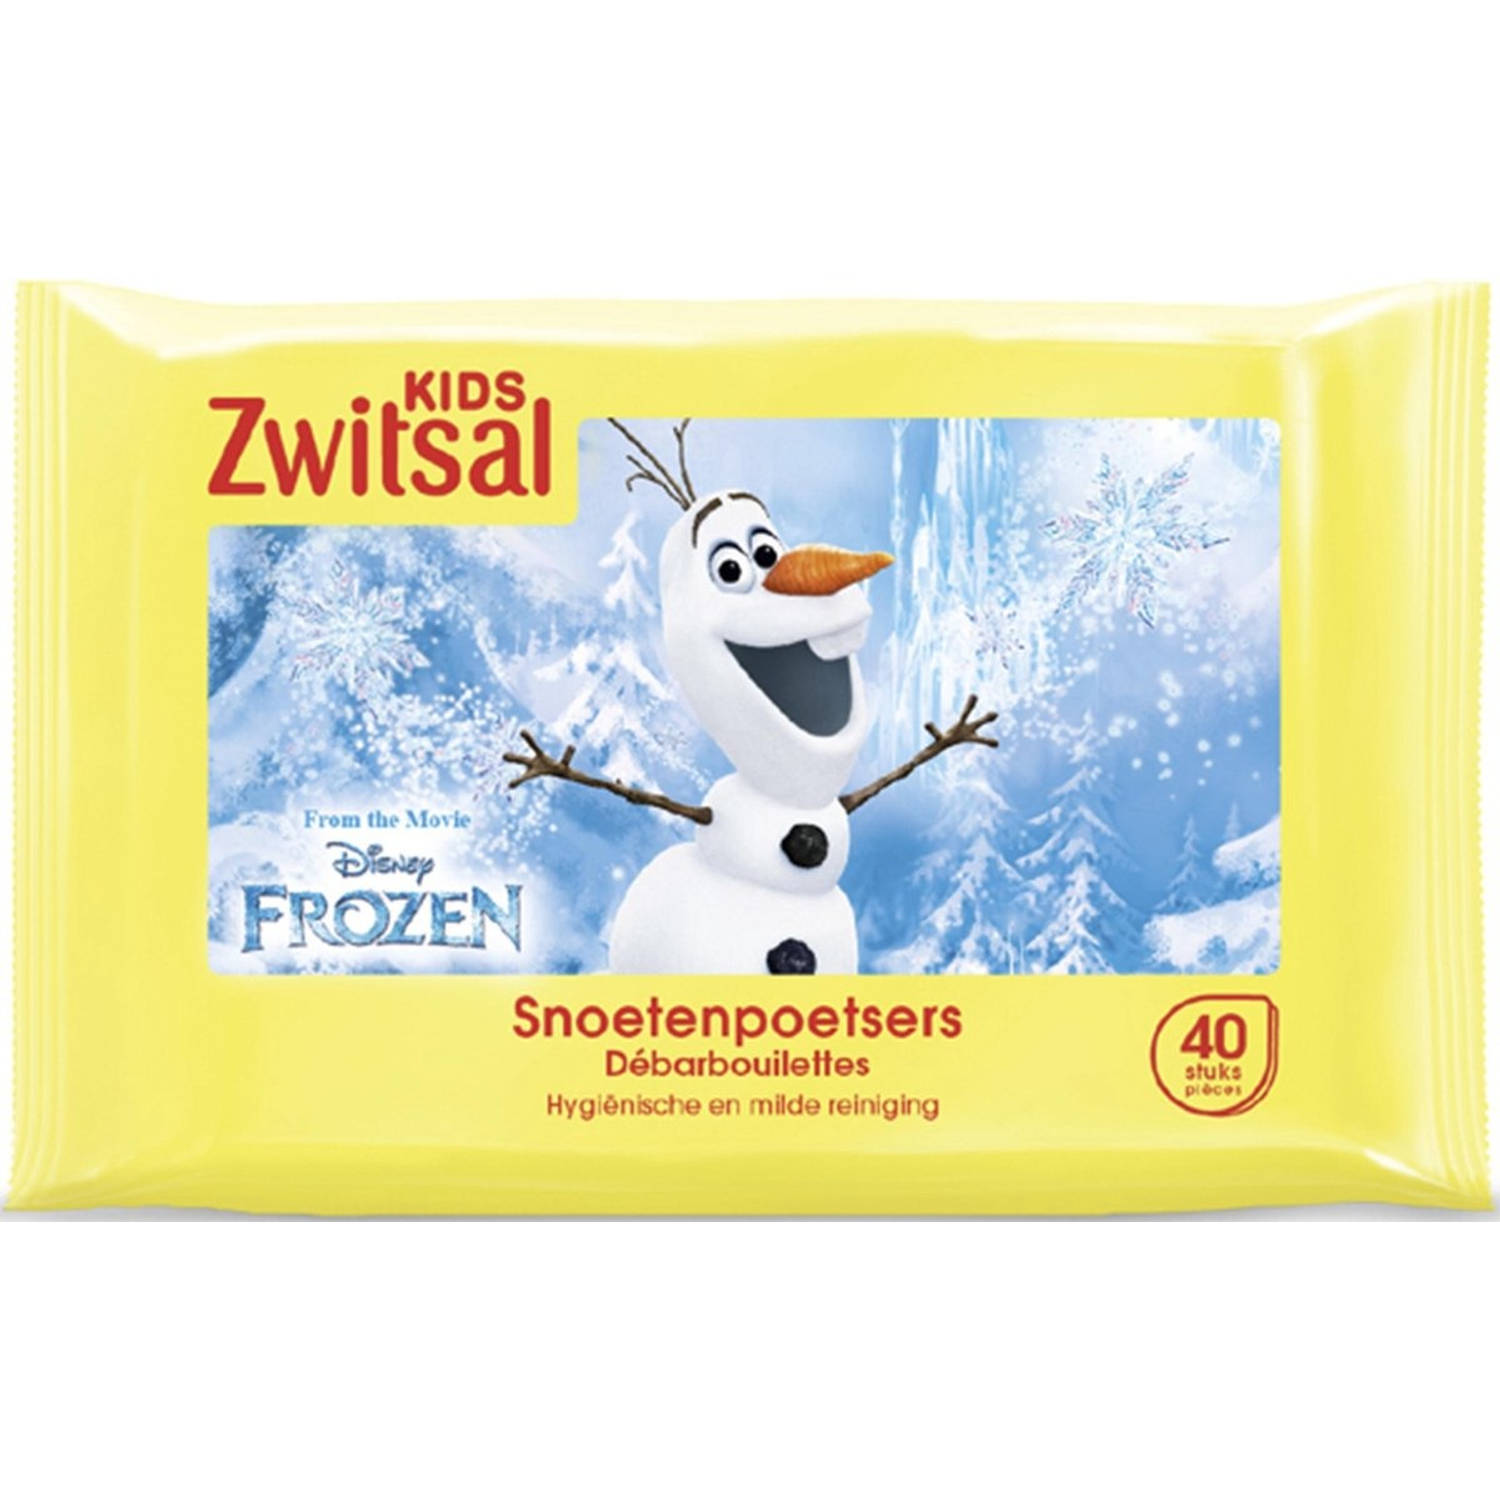 Zwitsal Kids Frozen Snoetenpoetsers 4 x 40 monddoekjes